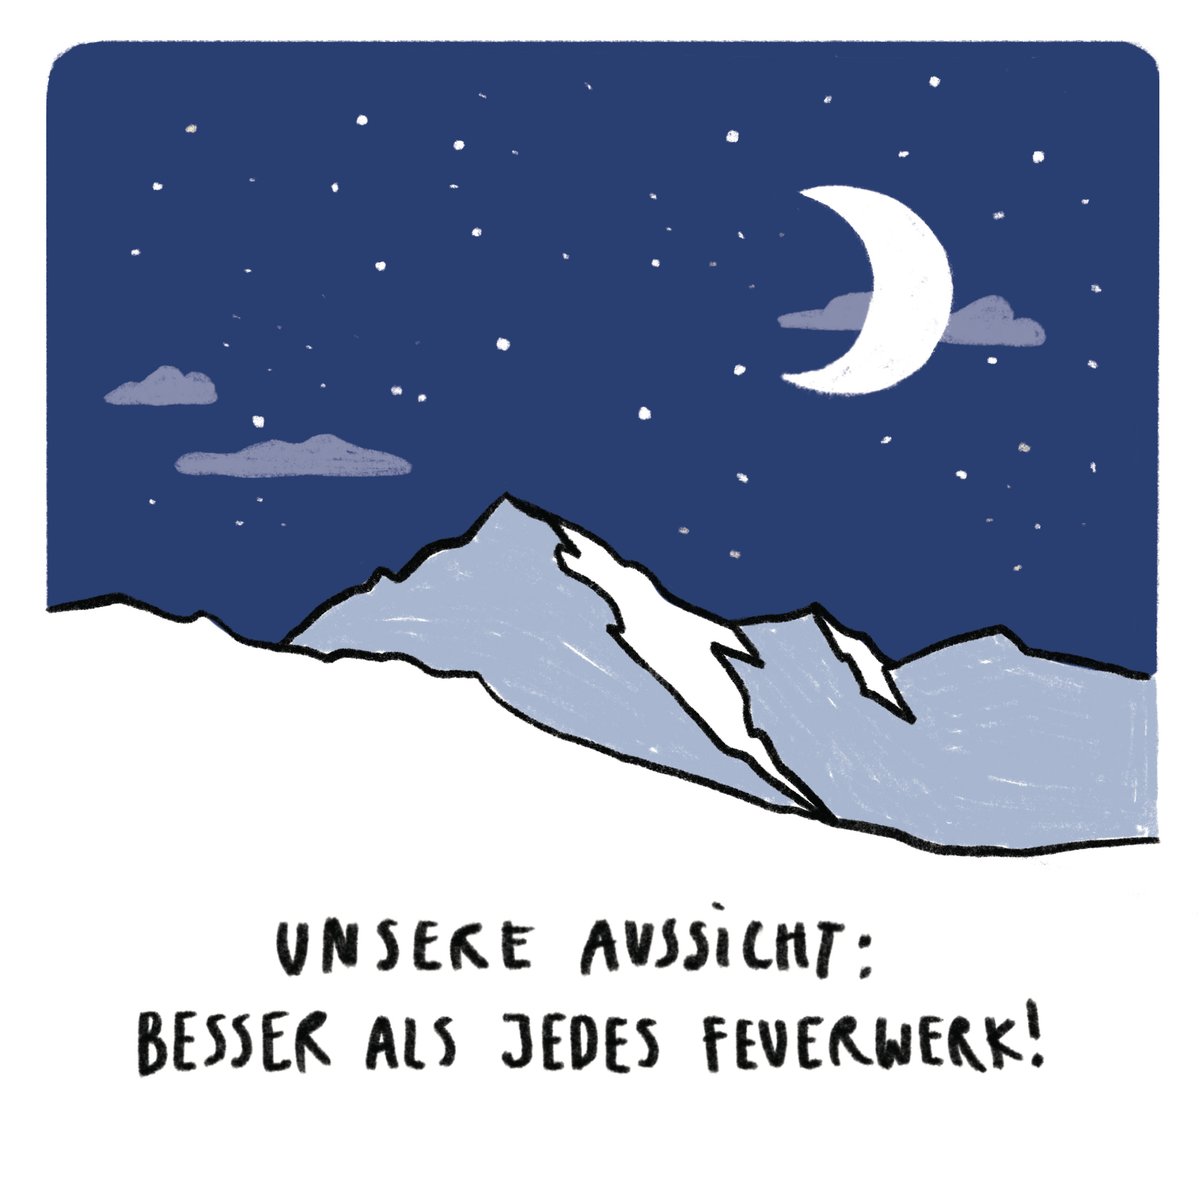 Wir wünschen euch einen wunderbaren 1. August. Wo es in #Graubünden heute nicht knallt, erfahrt ihr hier: graubuenden.ch/de/news/1-augu….